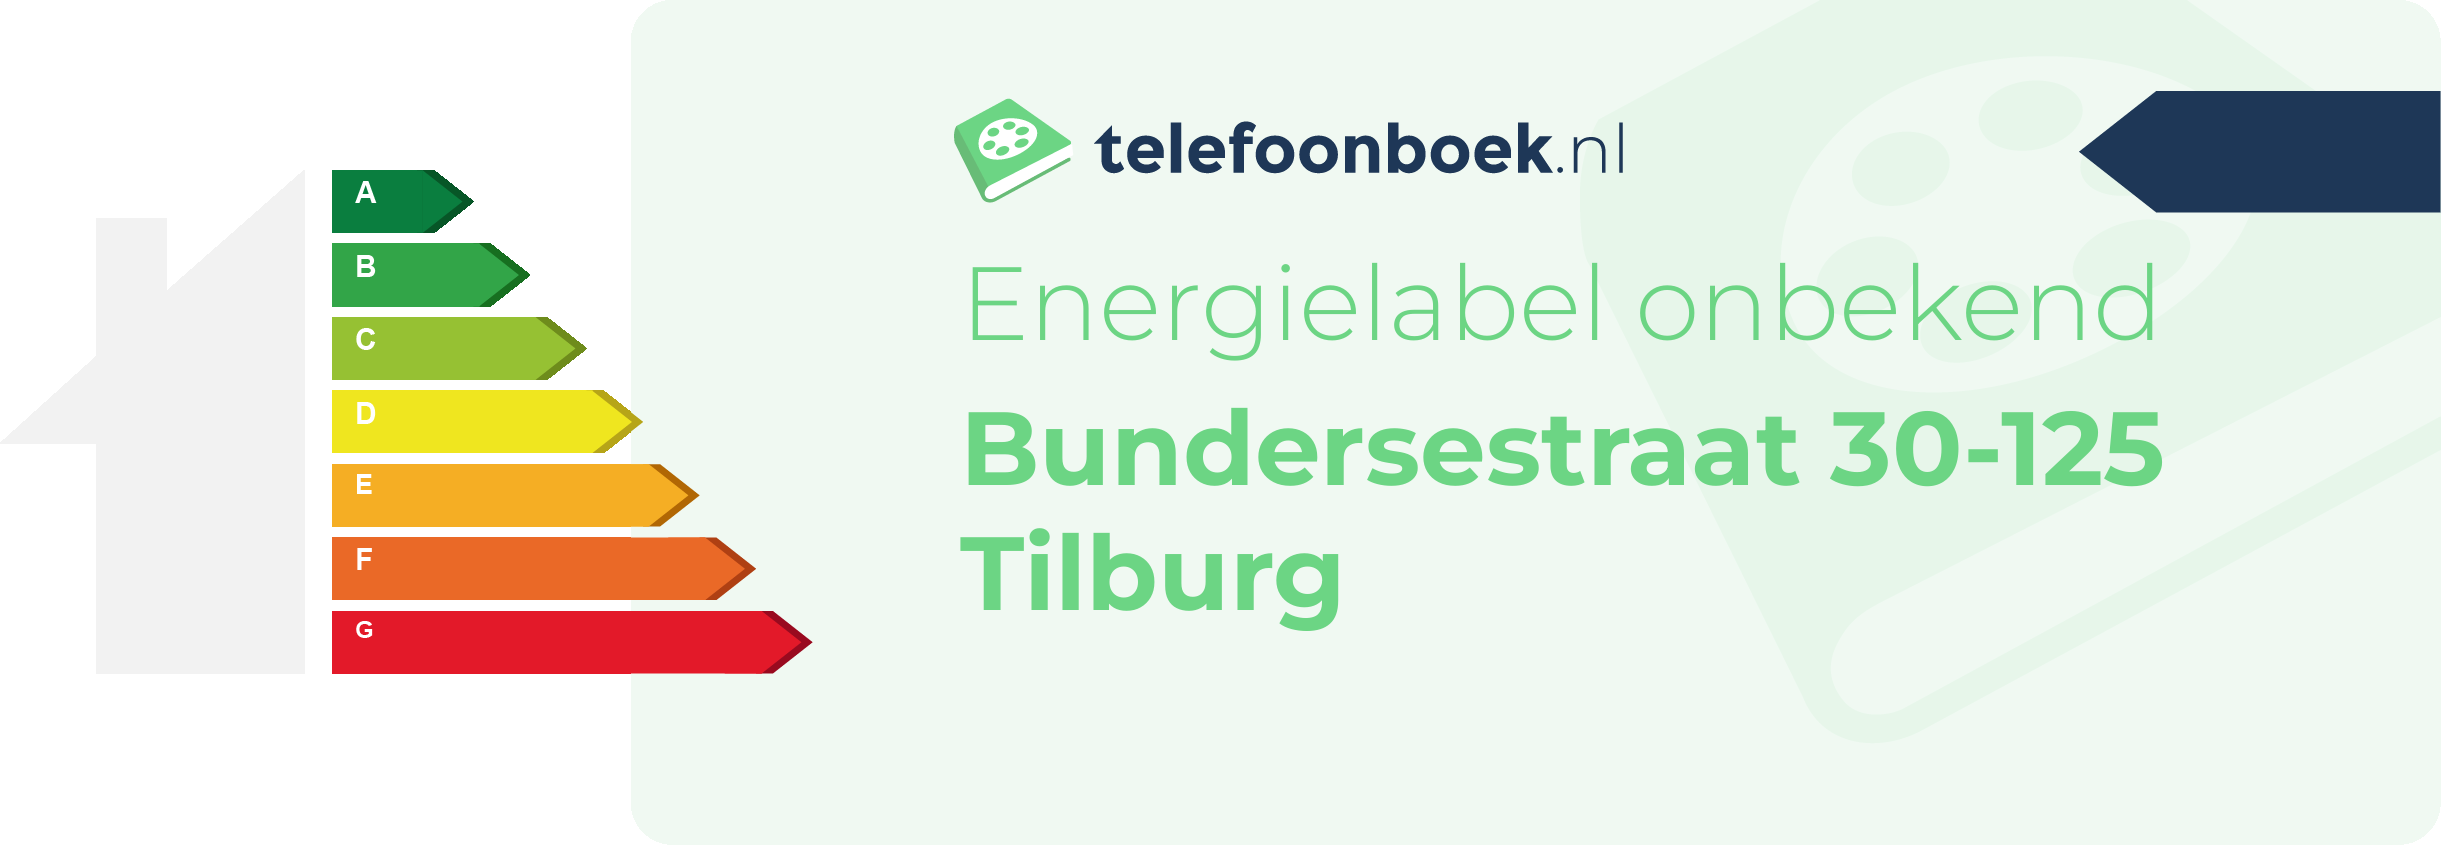 Energielabel Bundersestraat 30-125 Tilburg